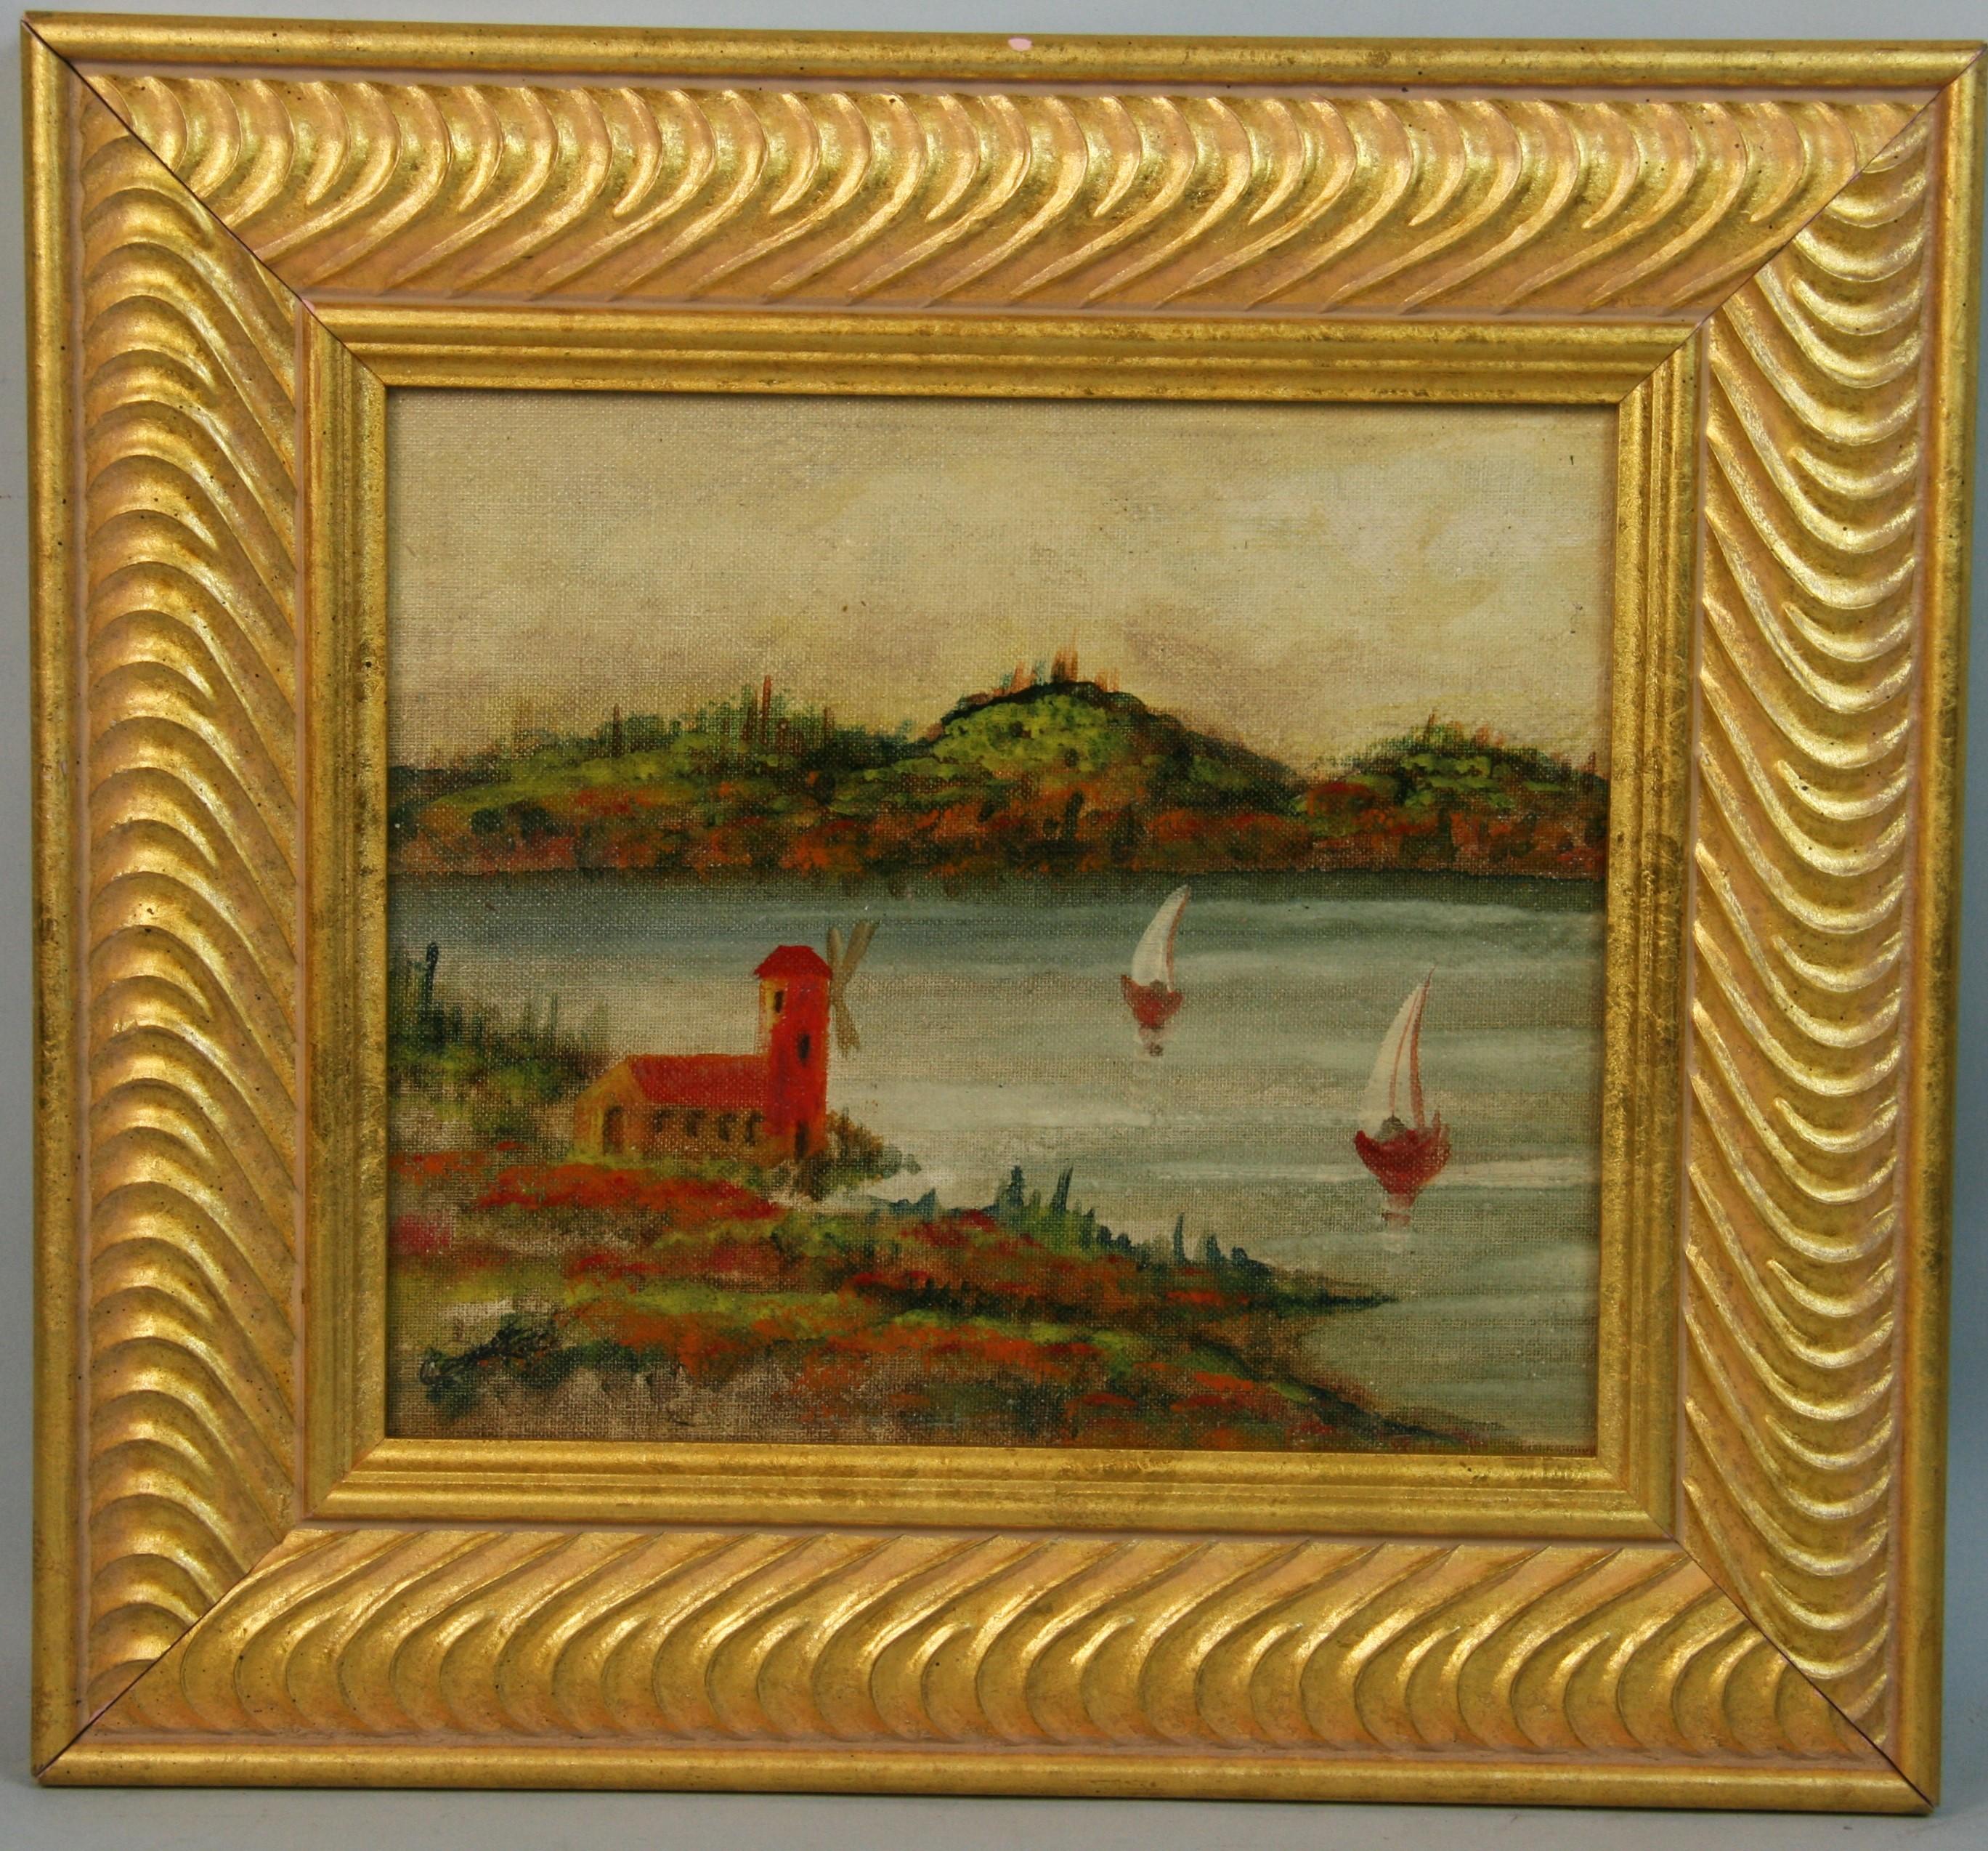 Europäische Segellandschaft mit Flussblick, 1950 – Painting von Unknown